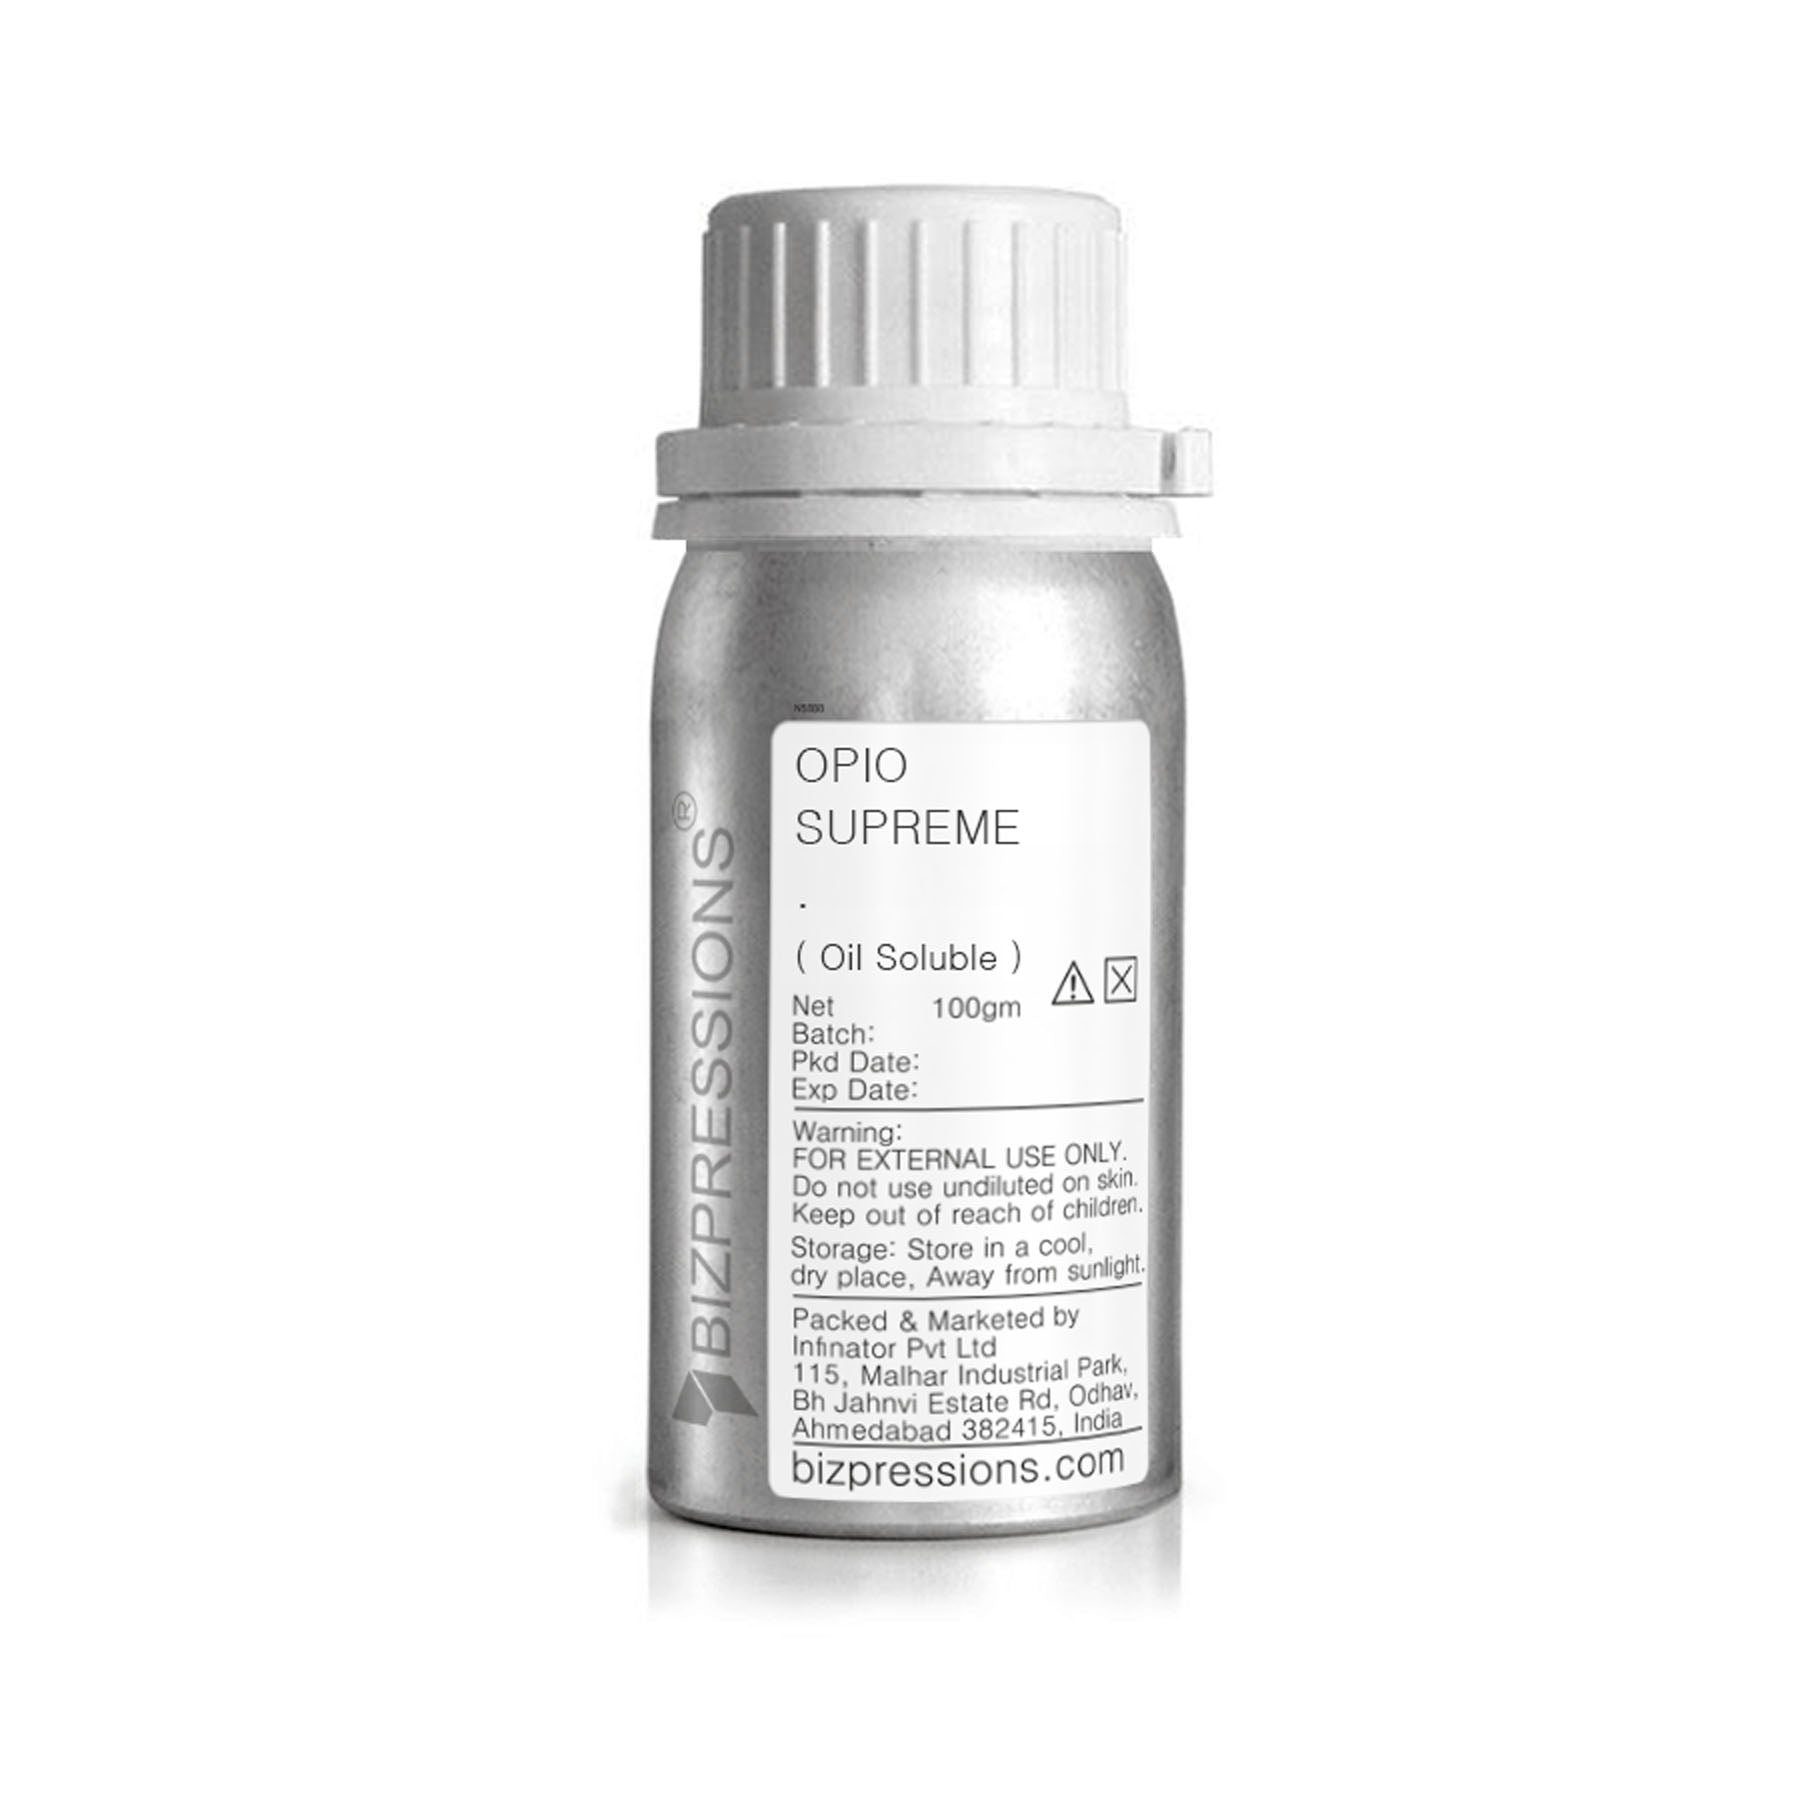 OPIO SUPREME - Fragrance ( Oil Soluble ) - 100 gm